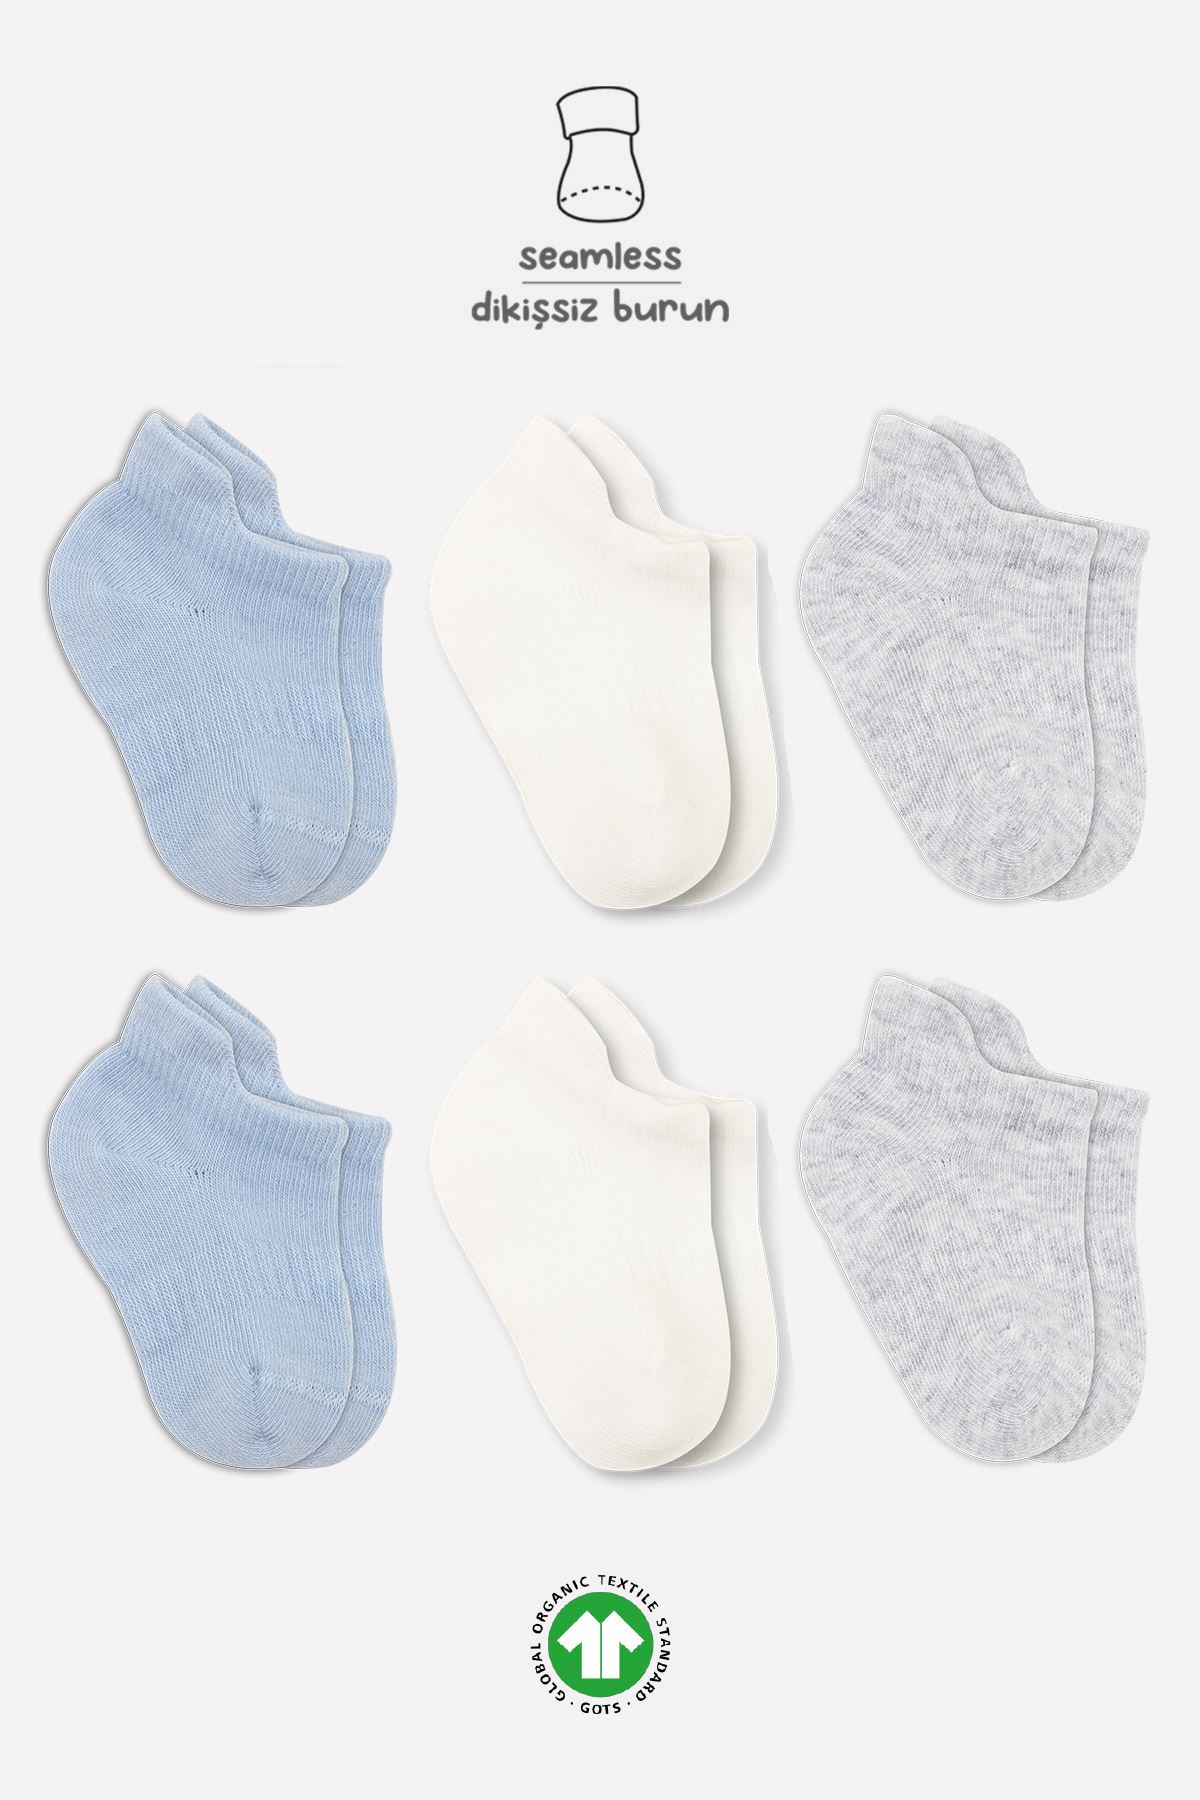 Bistyle 6lı Penye Sneakers Soket Çorap BS6102 Mavi Ekru